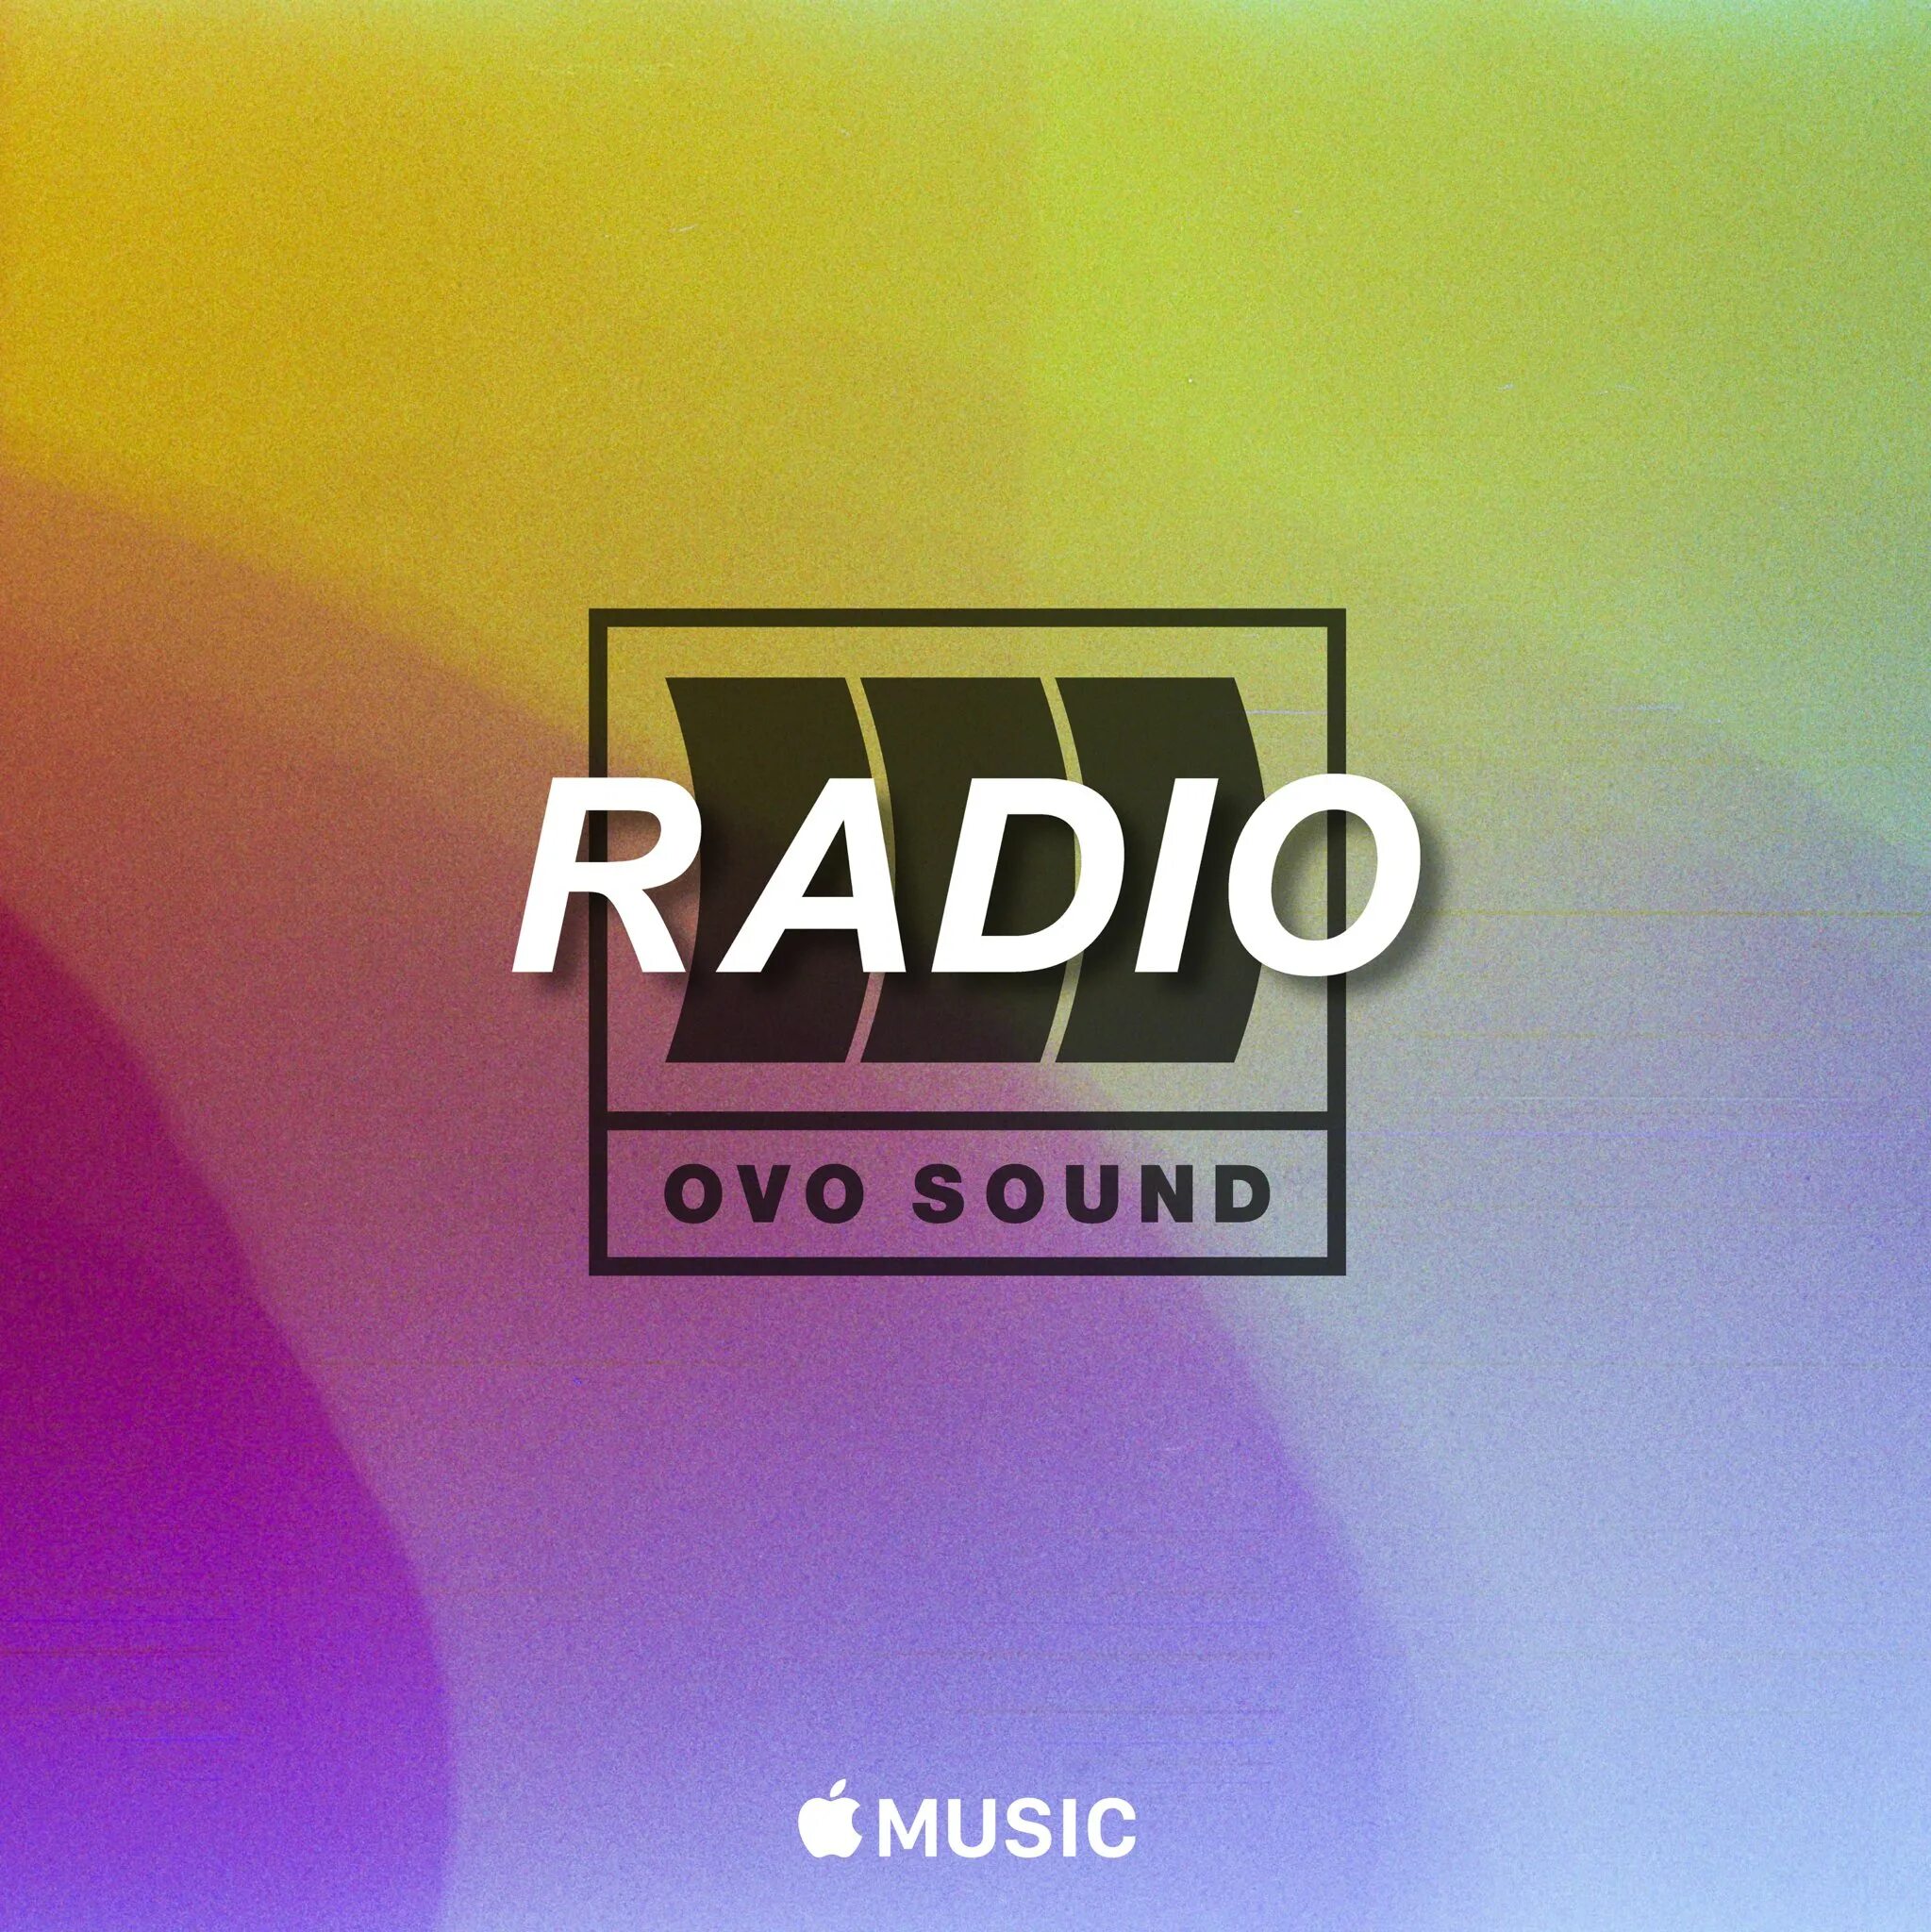 Радио громкость 2. Радио Sound. Ovo Sound. Radio Sound .at. Ovo records logo.